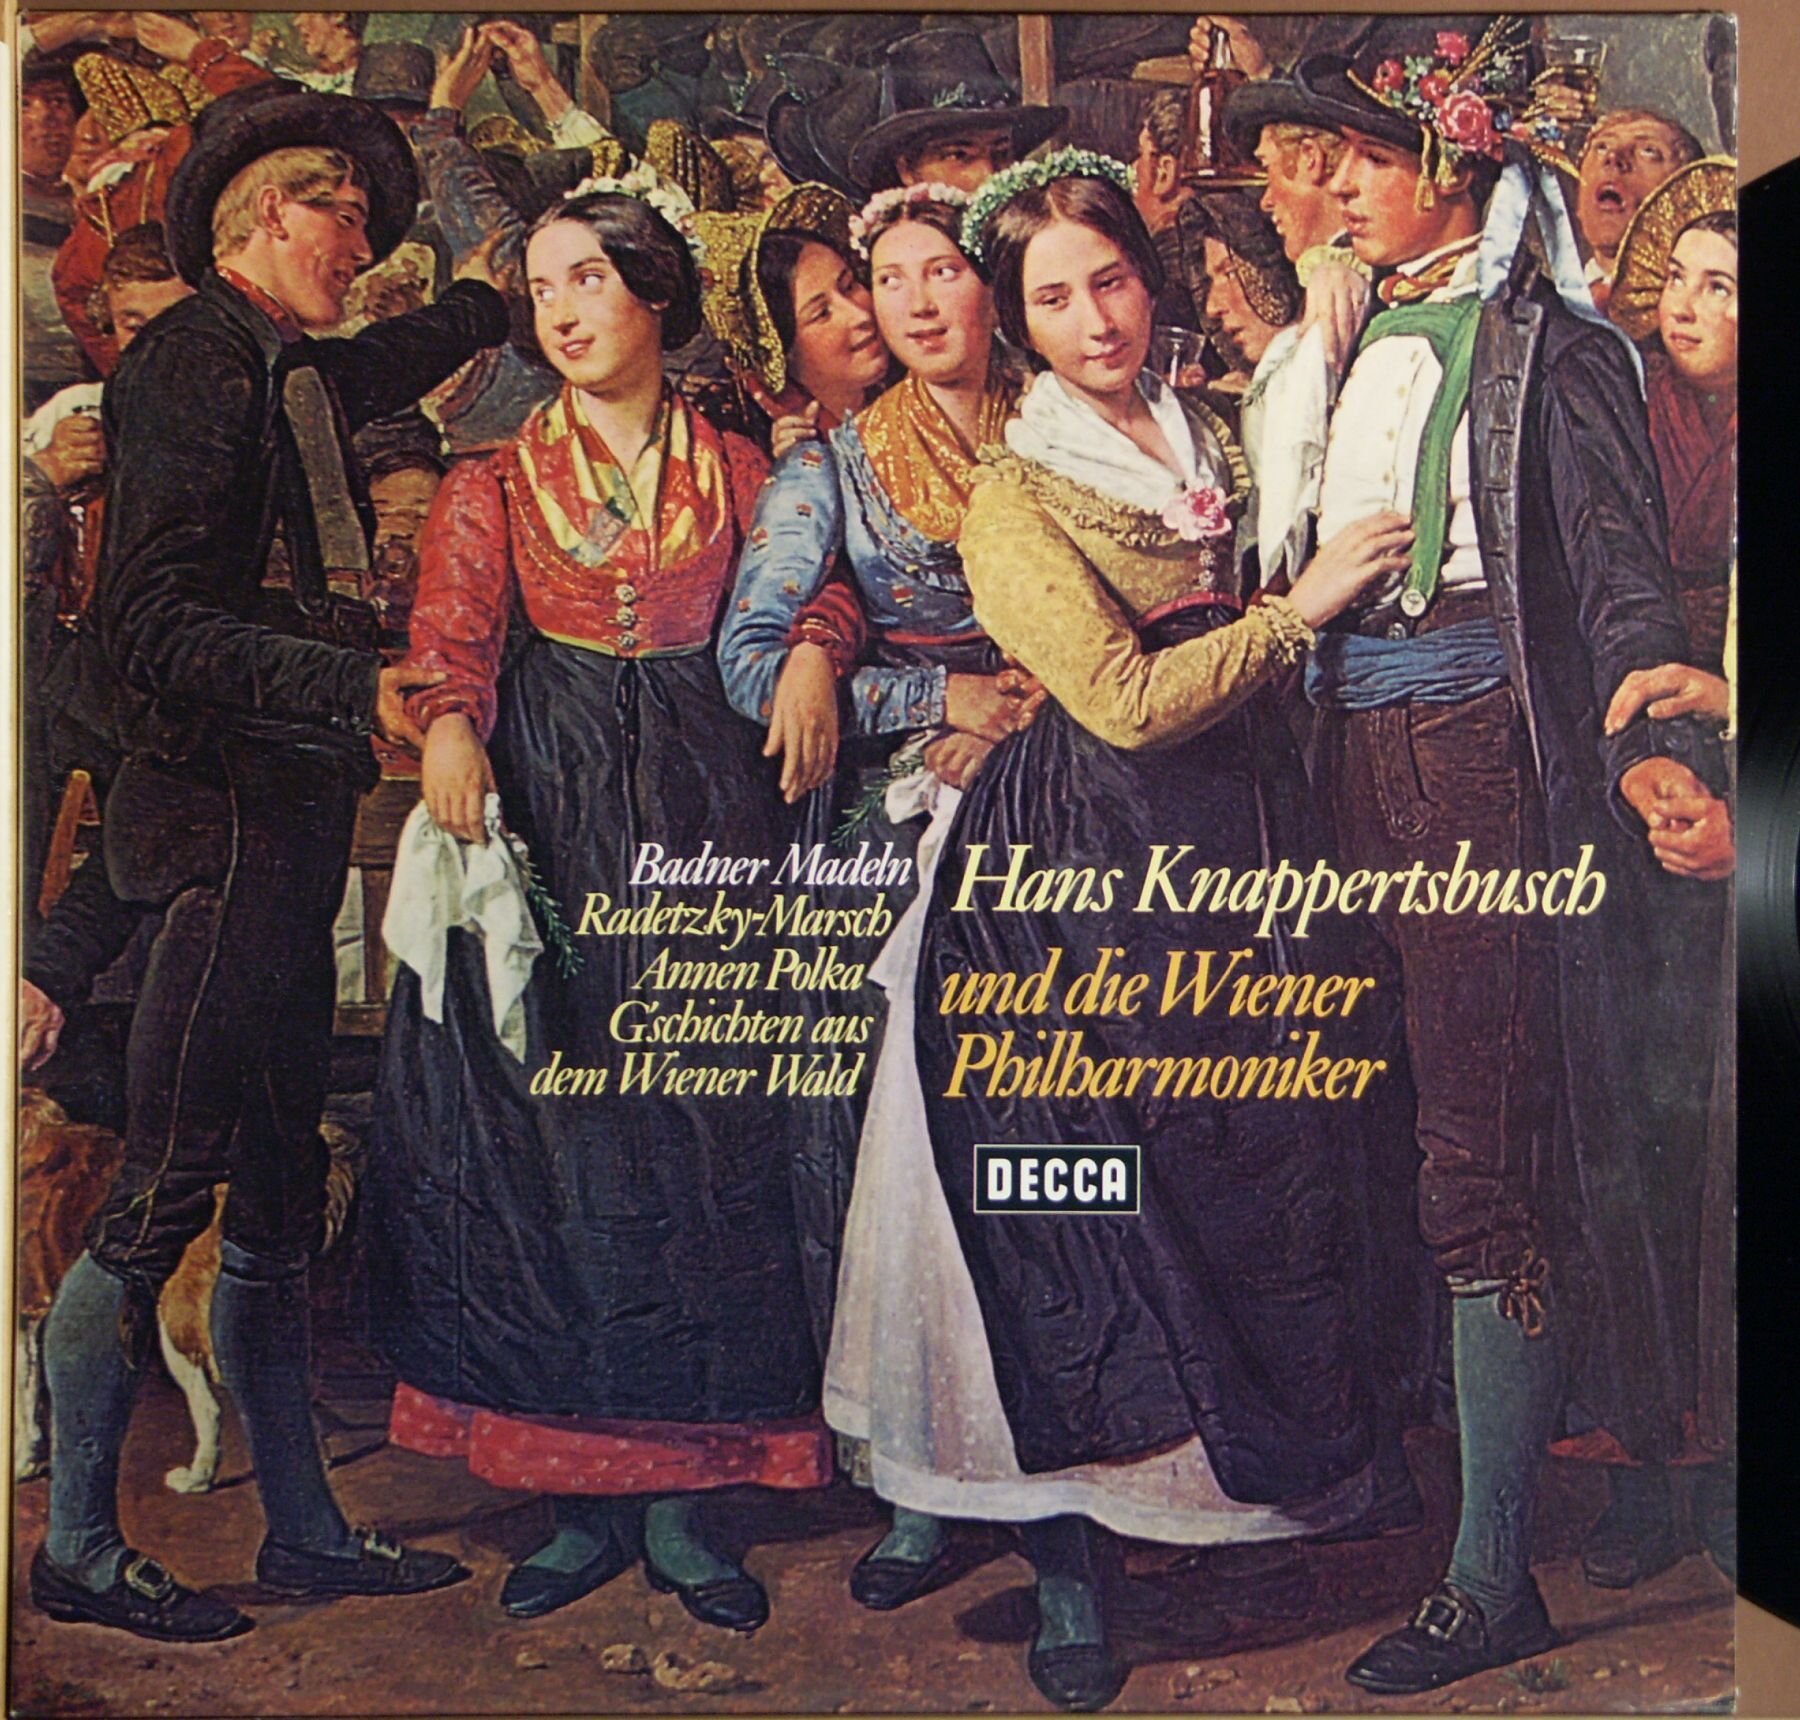 Hans Knappertsbusch vinyl, 716 LP records & CD found on CDandLP